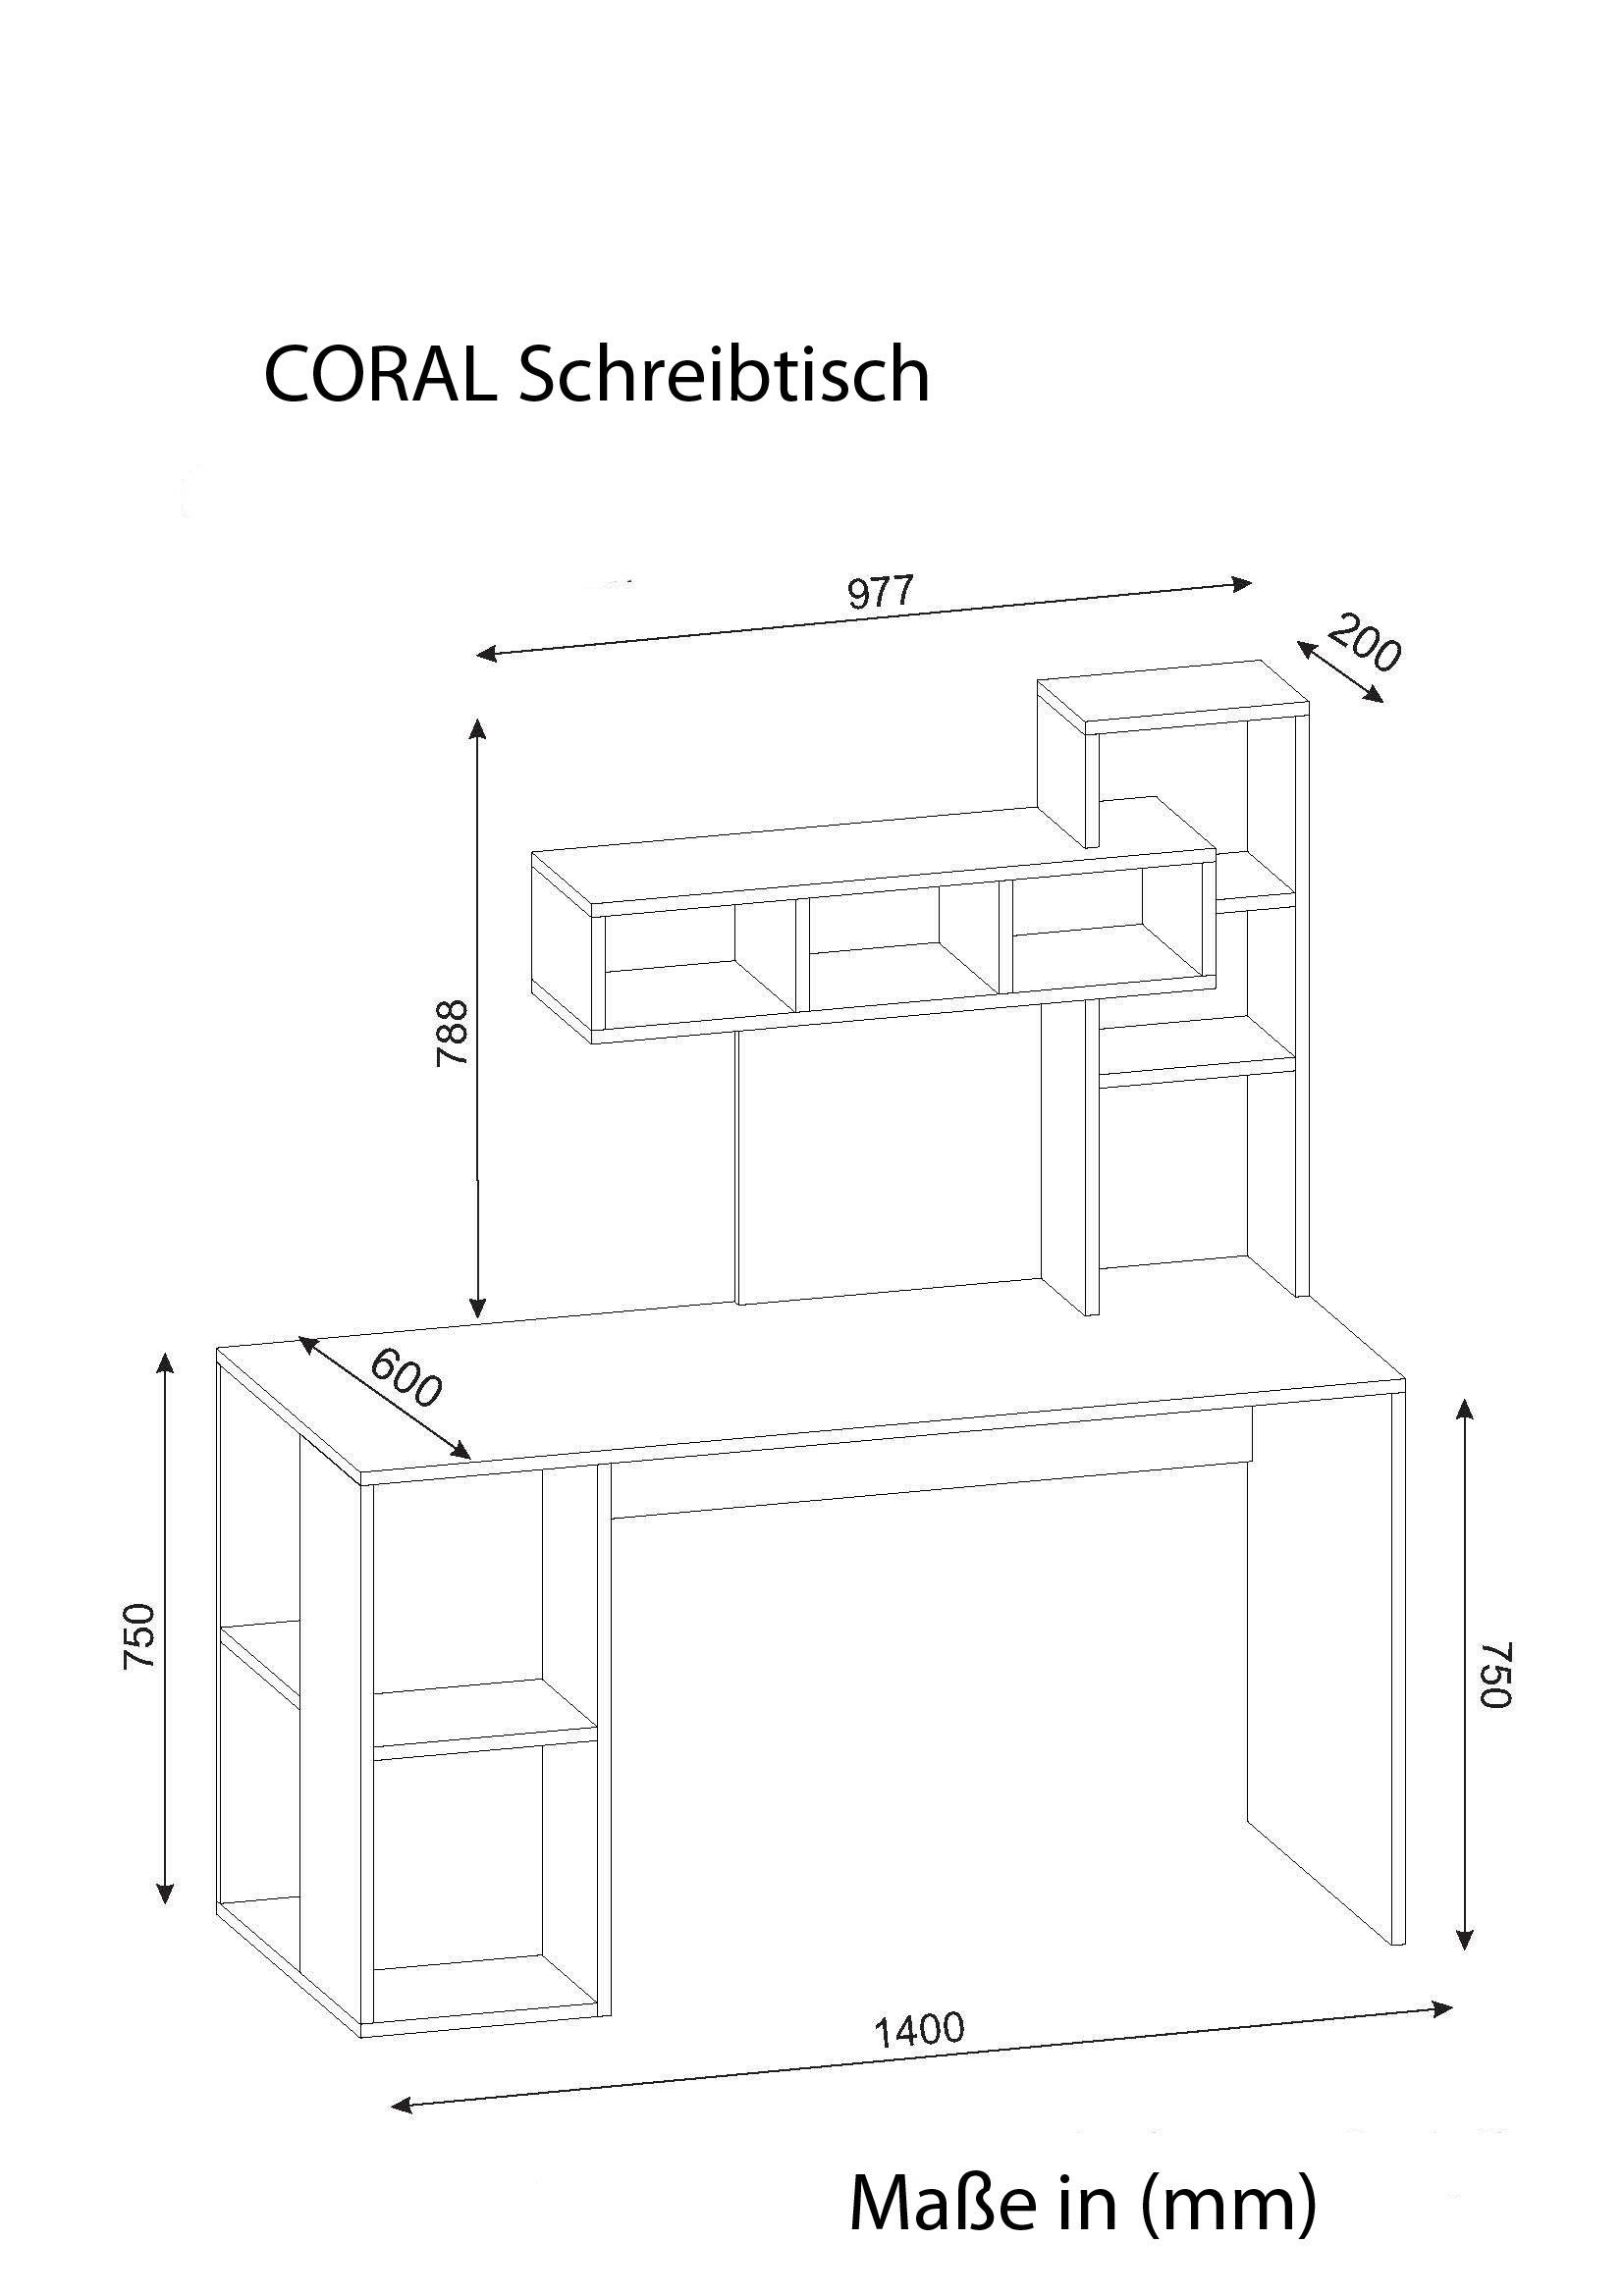 moebel17 Schreibtisch Schreibtisch Coral Walnuss Weiß Weiß Cordoba